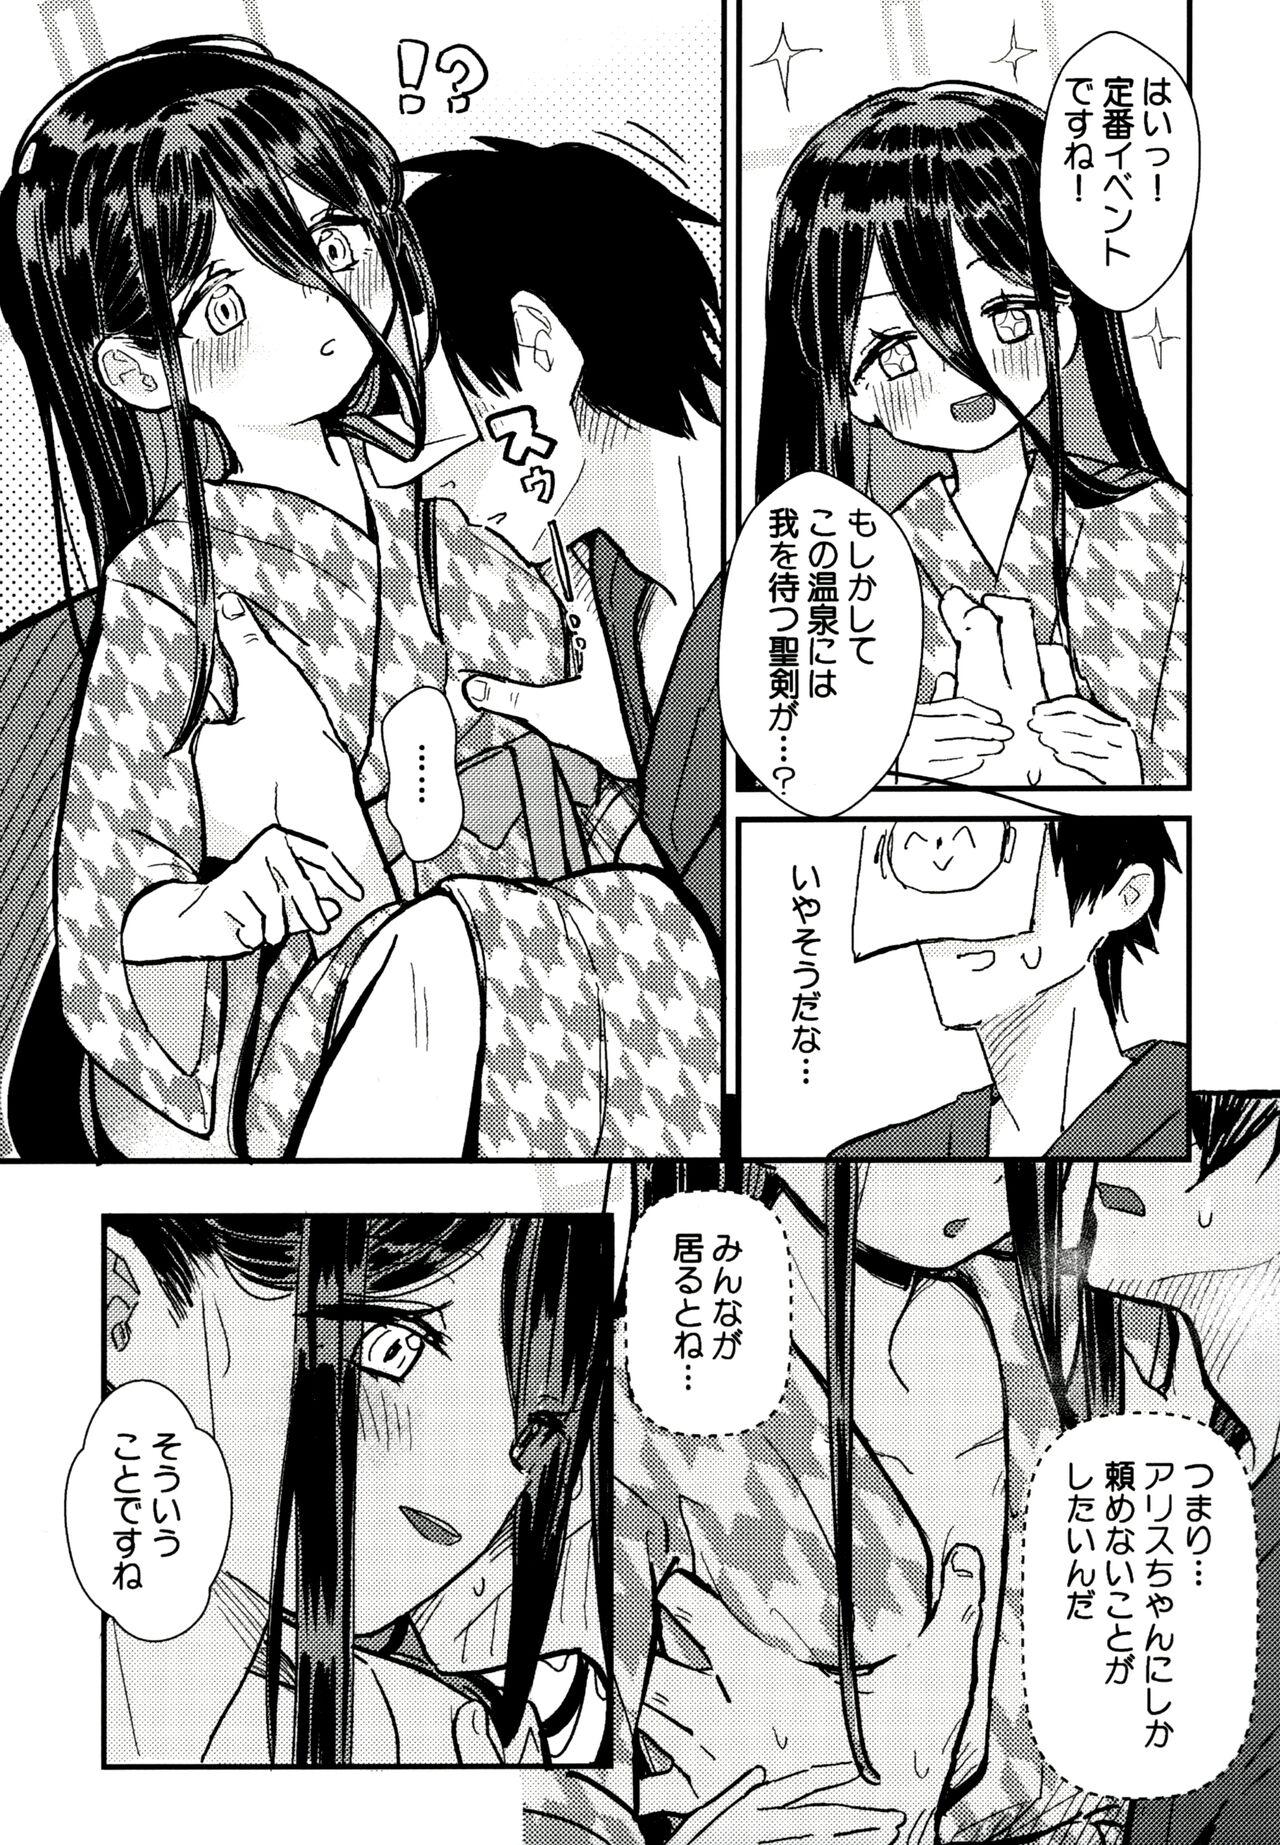 Socks Sensei no Aka-chan Milk wa Alice no Jinkou Shikyuu de Atatamemasu! - Blue archive Stretch - Page 4